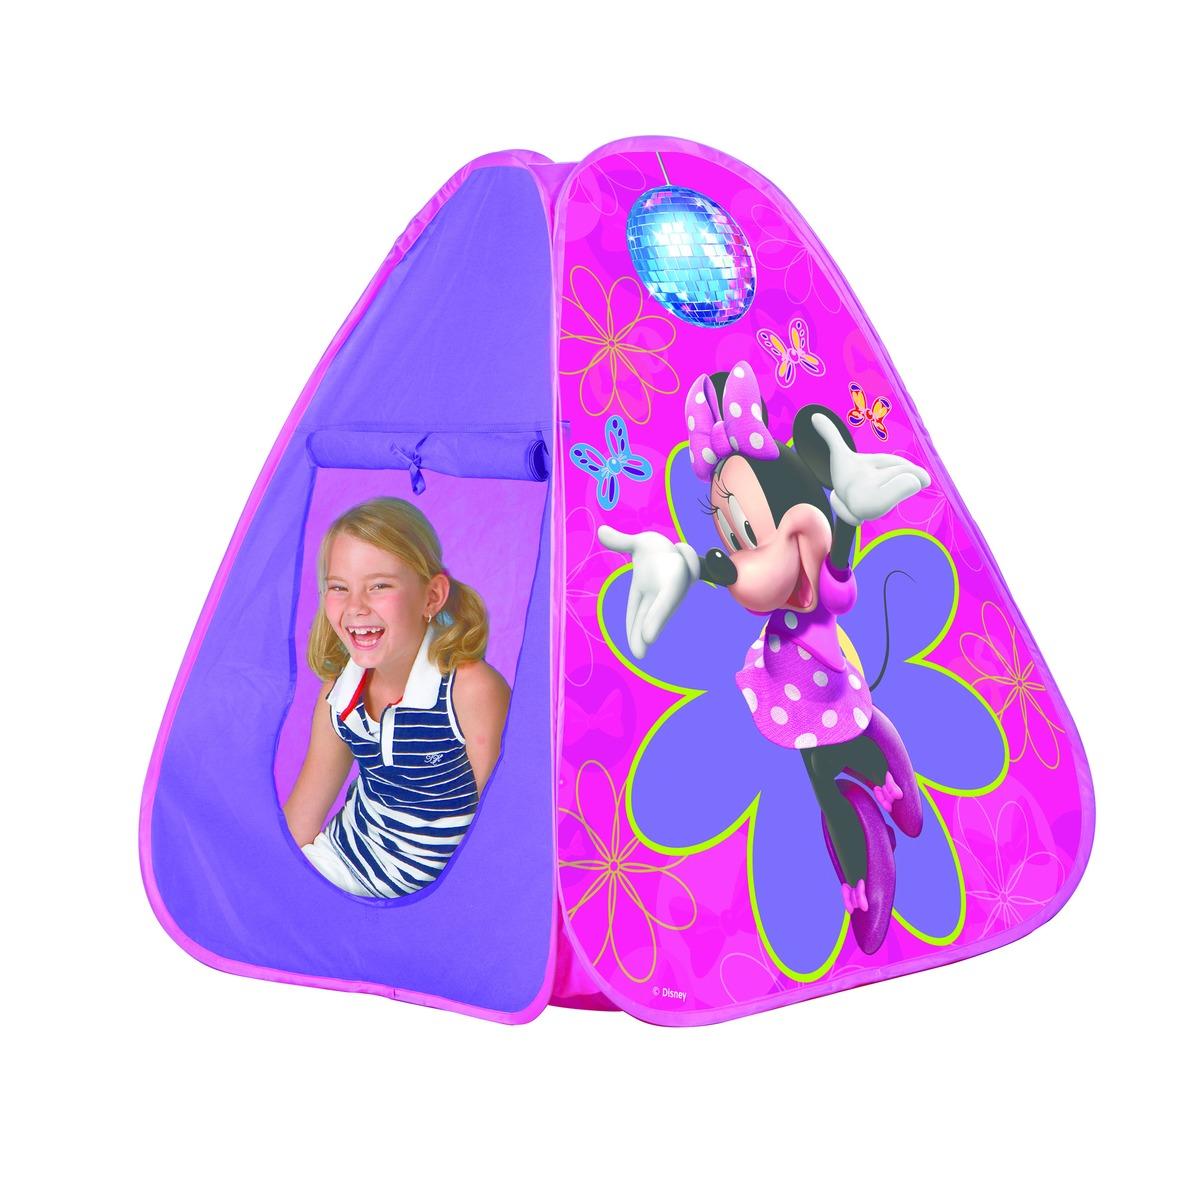 Tente pop up enfant Disney Minnie - 75 x 75 x 90 cm - Rose, violet